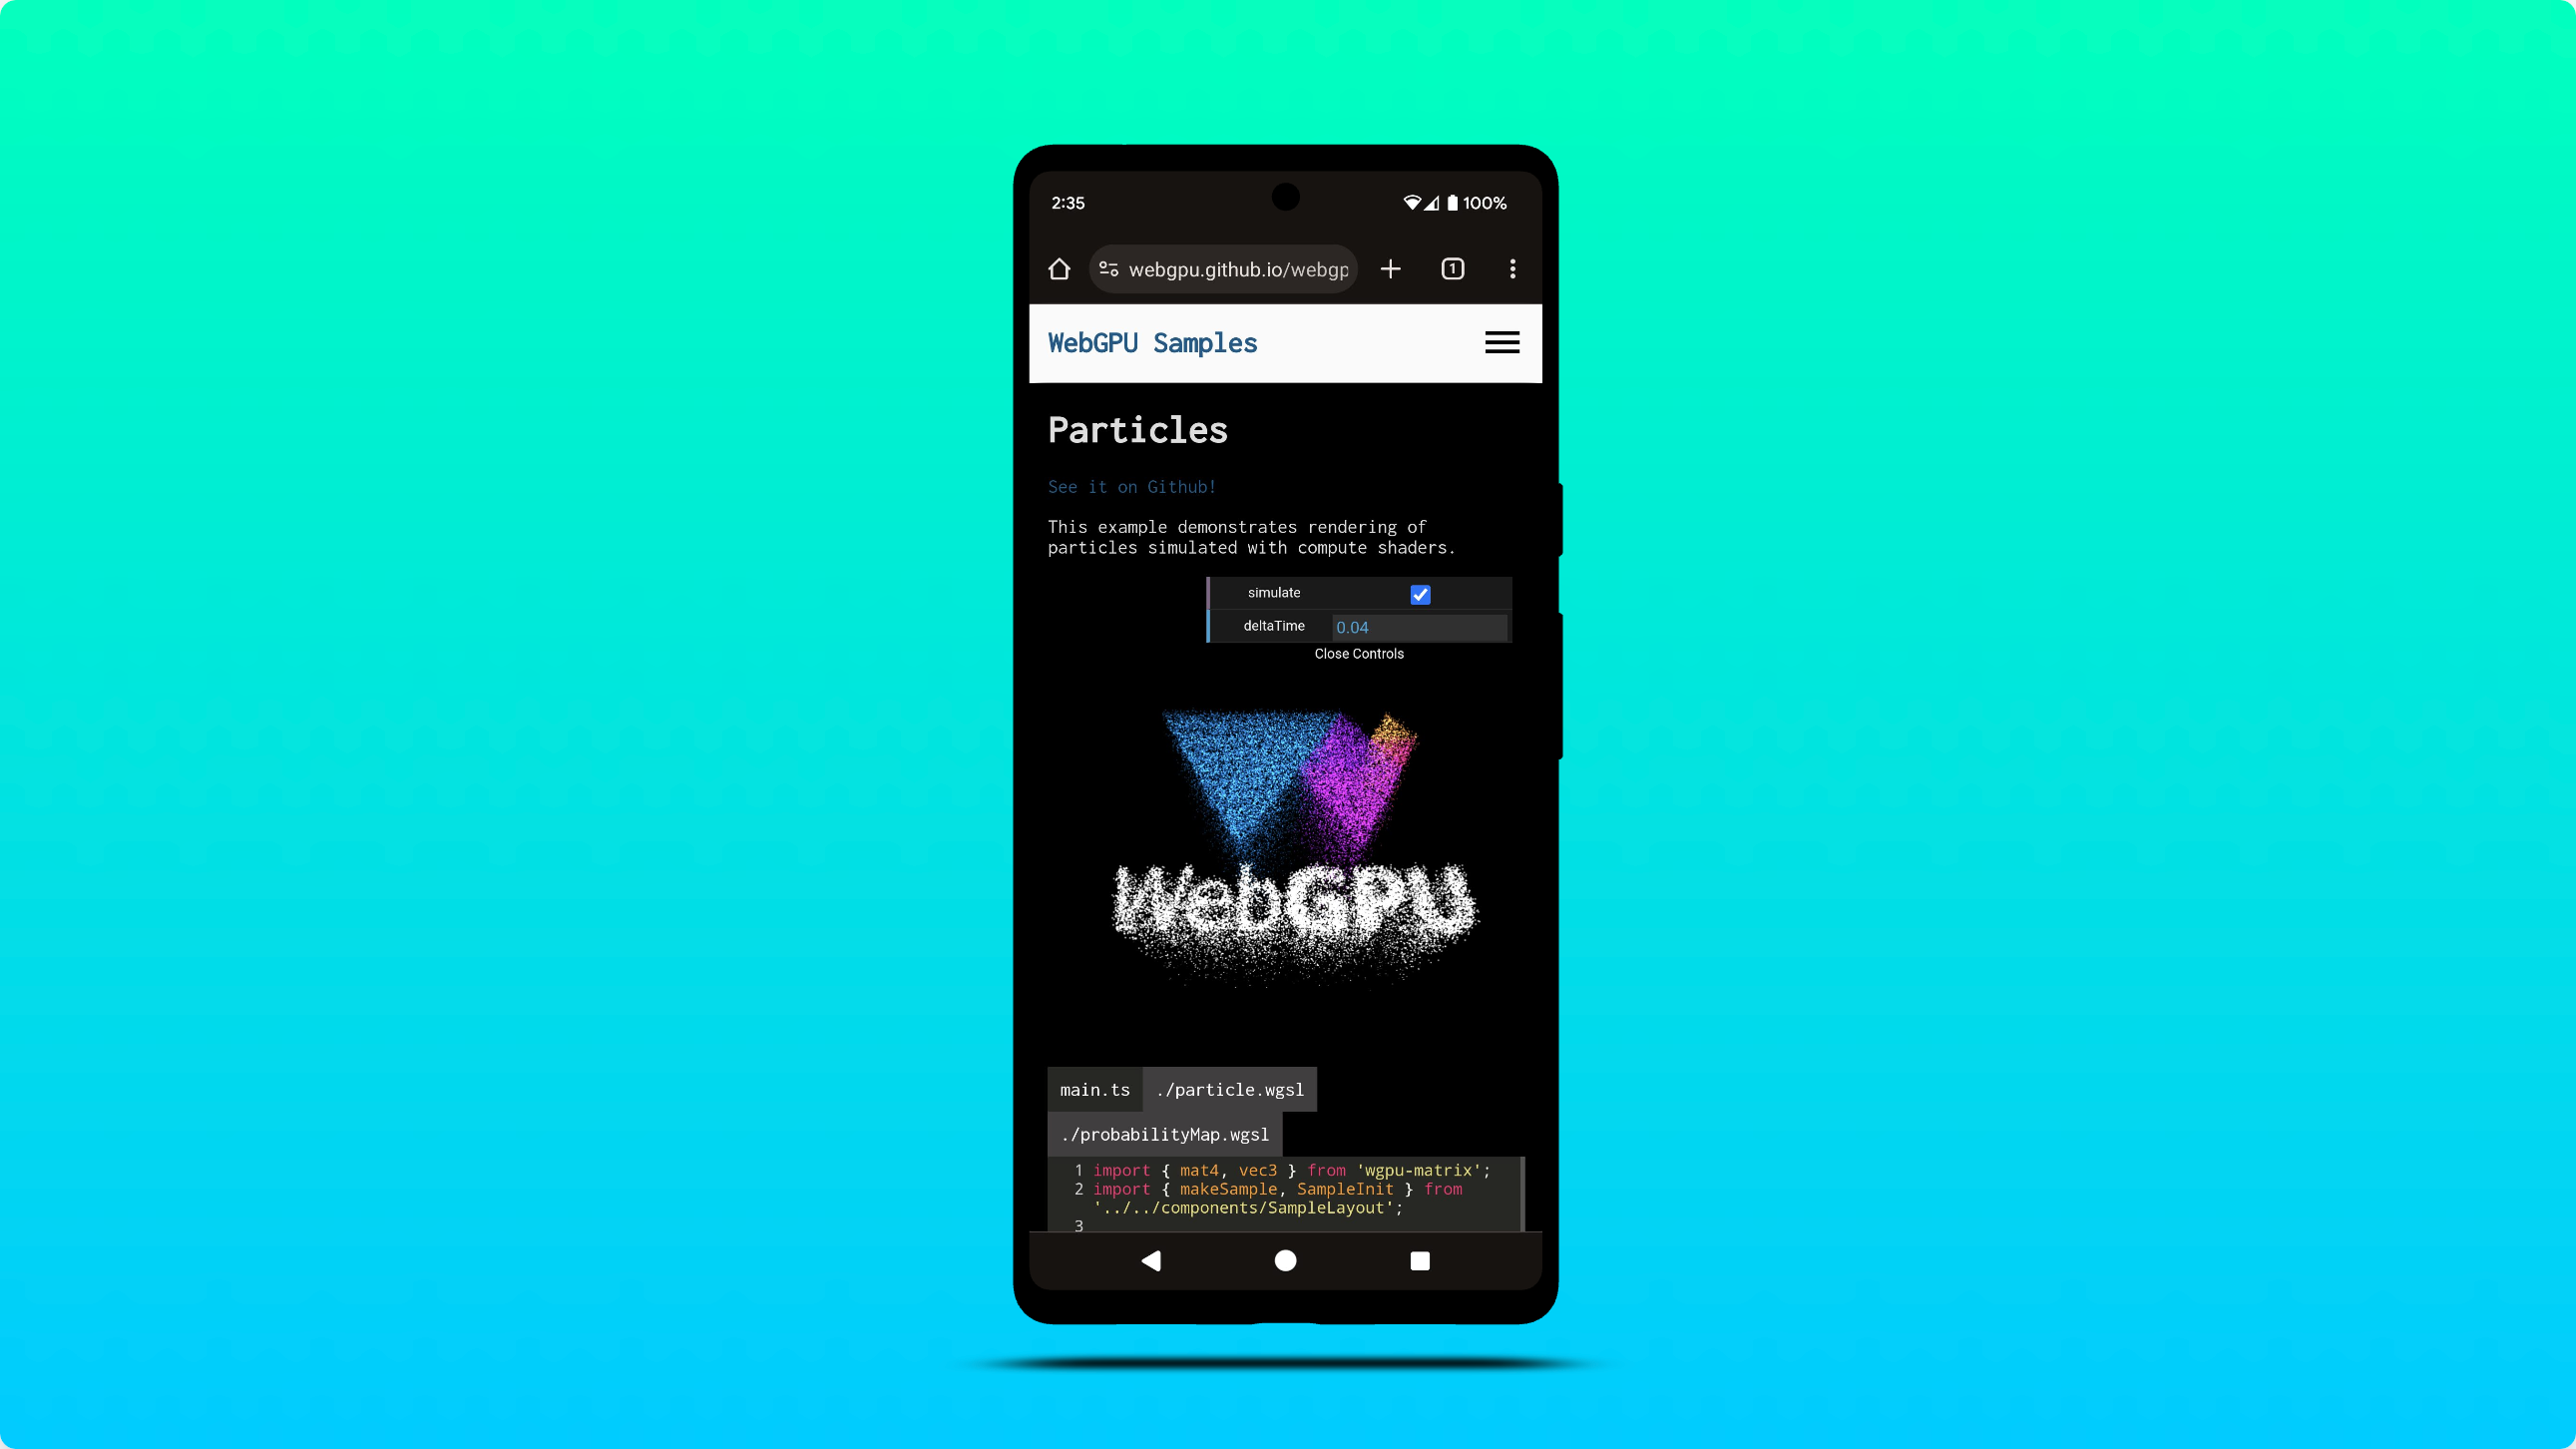 Captura de tela do exemplo da WebGPU em execução no Chrome para Android.